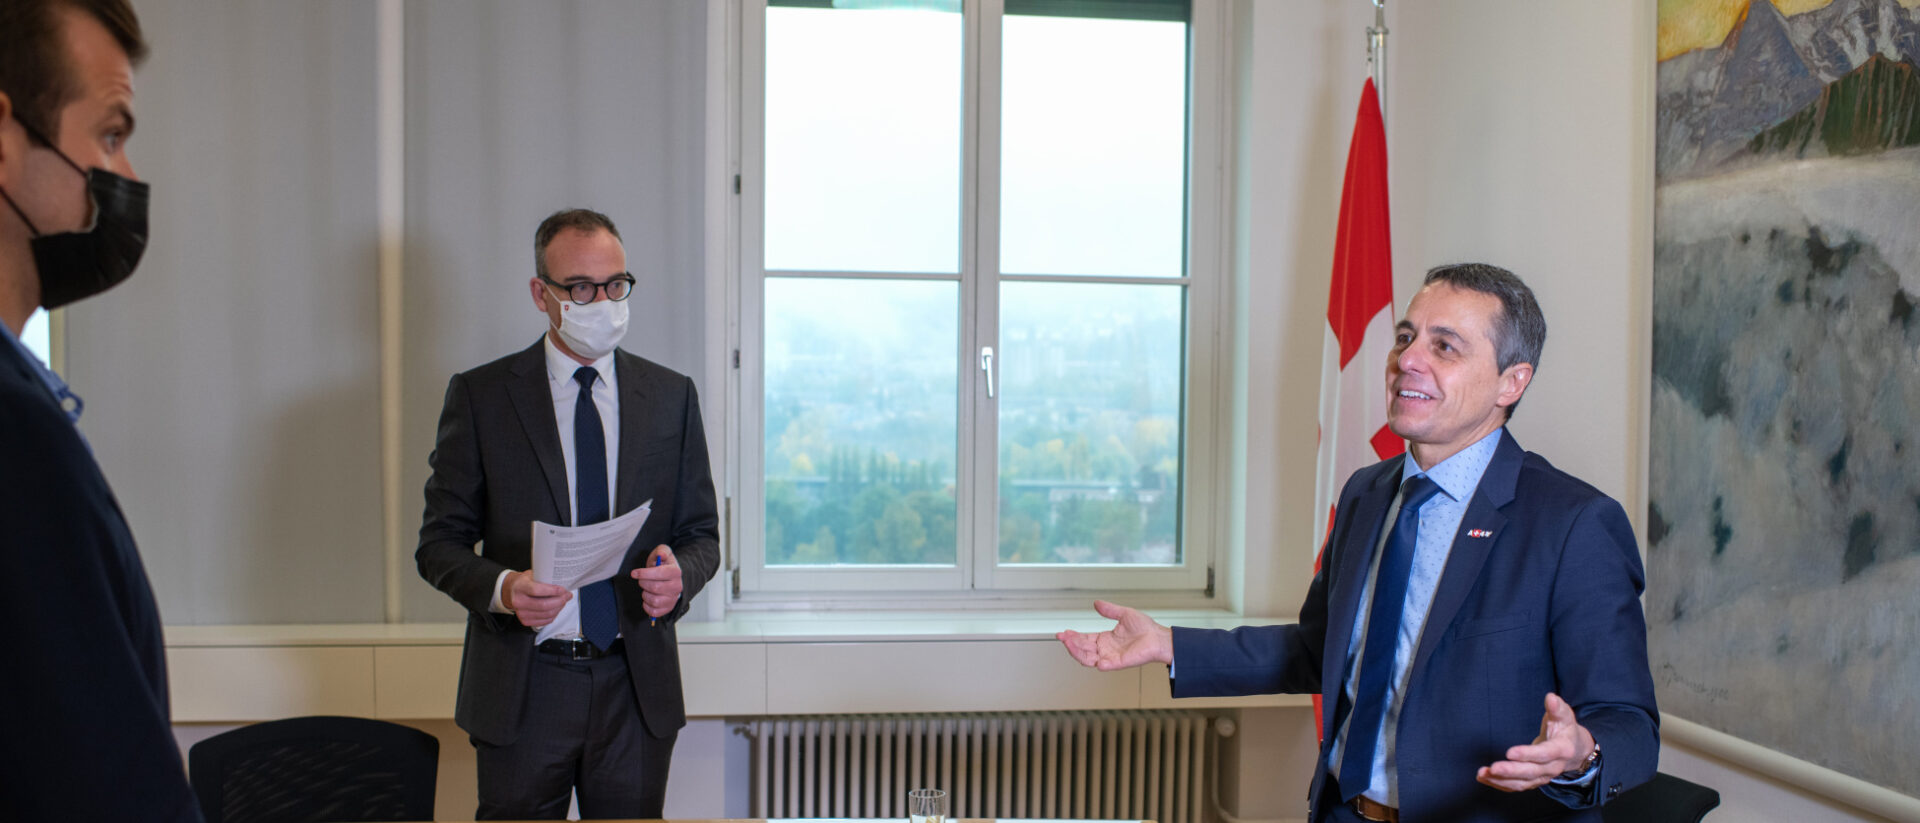 Bundesrat Ignazio Cassis (rechts) im Gespräch mit Raphael Rauch (links). In der Mitte ist Cassis' Sprecher Michael Steiner zu sehen.